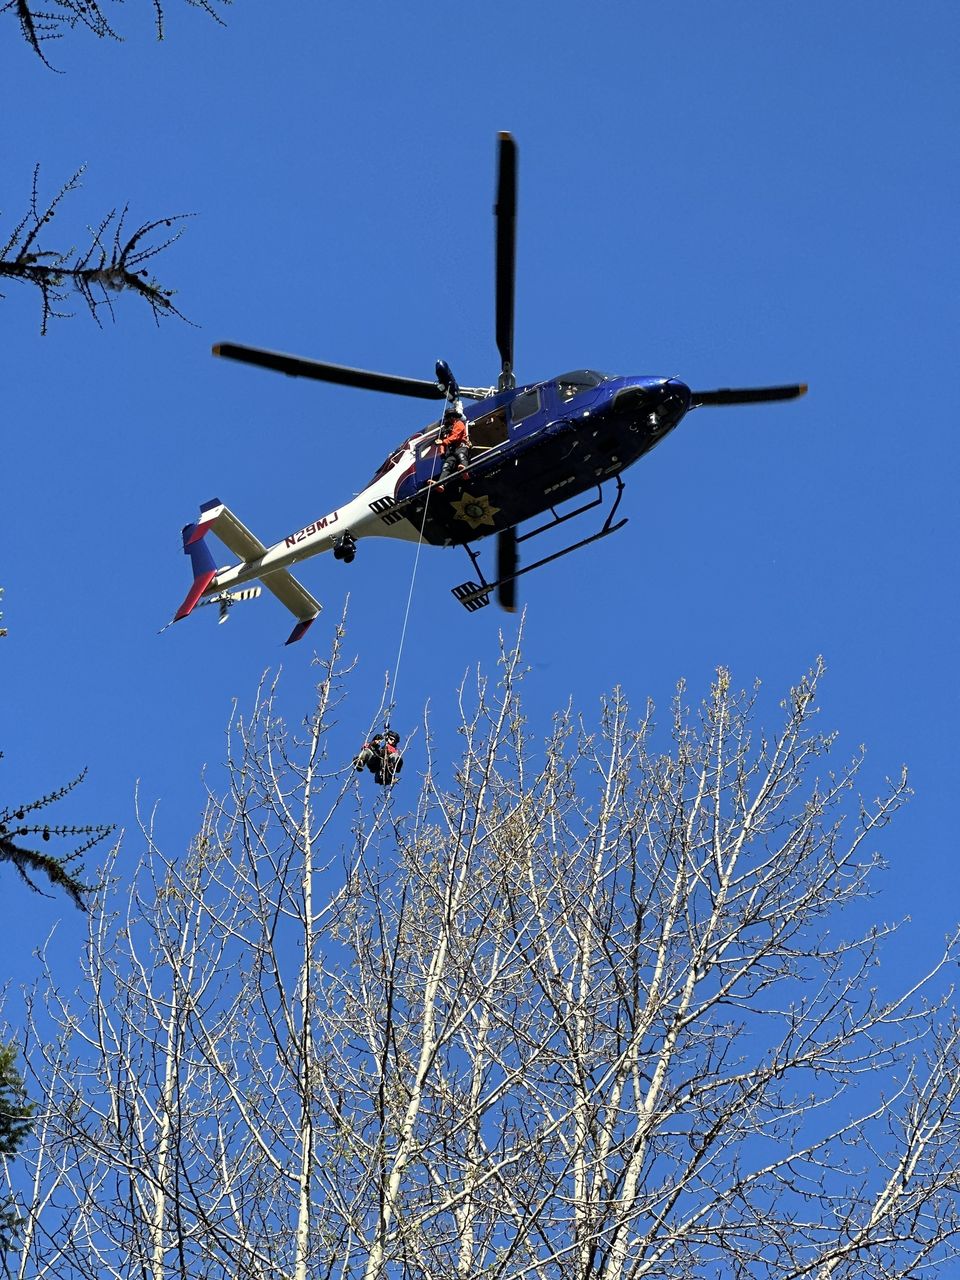 Two Bear Air Rescue